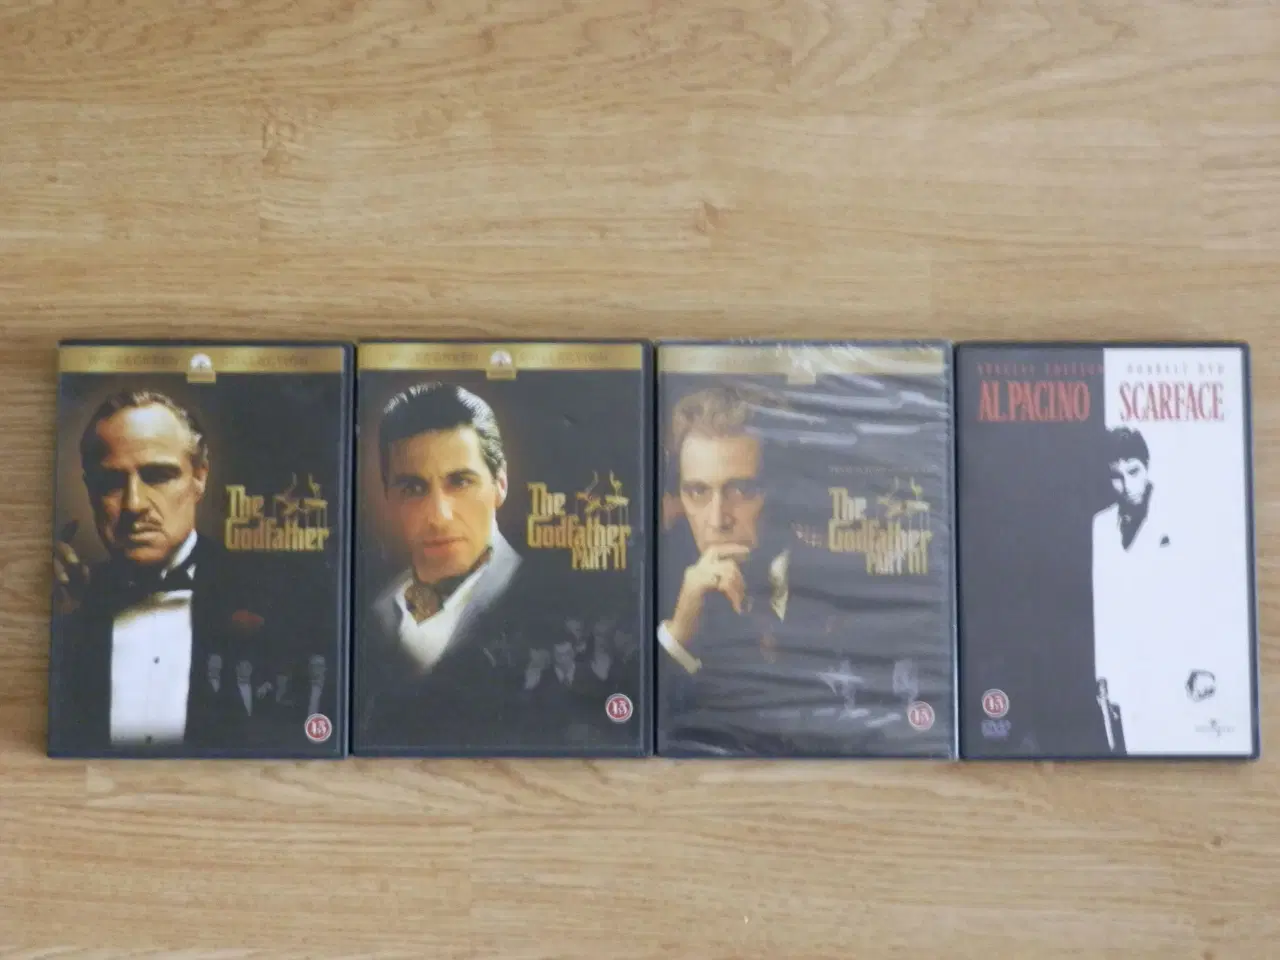 Billede 1 - The Godfather trilogi og Scarface